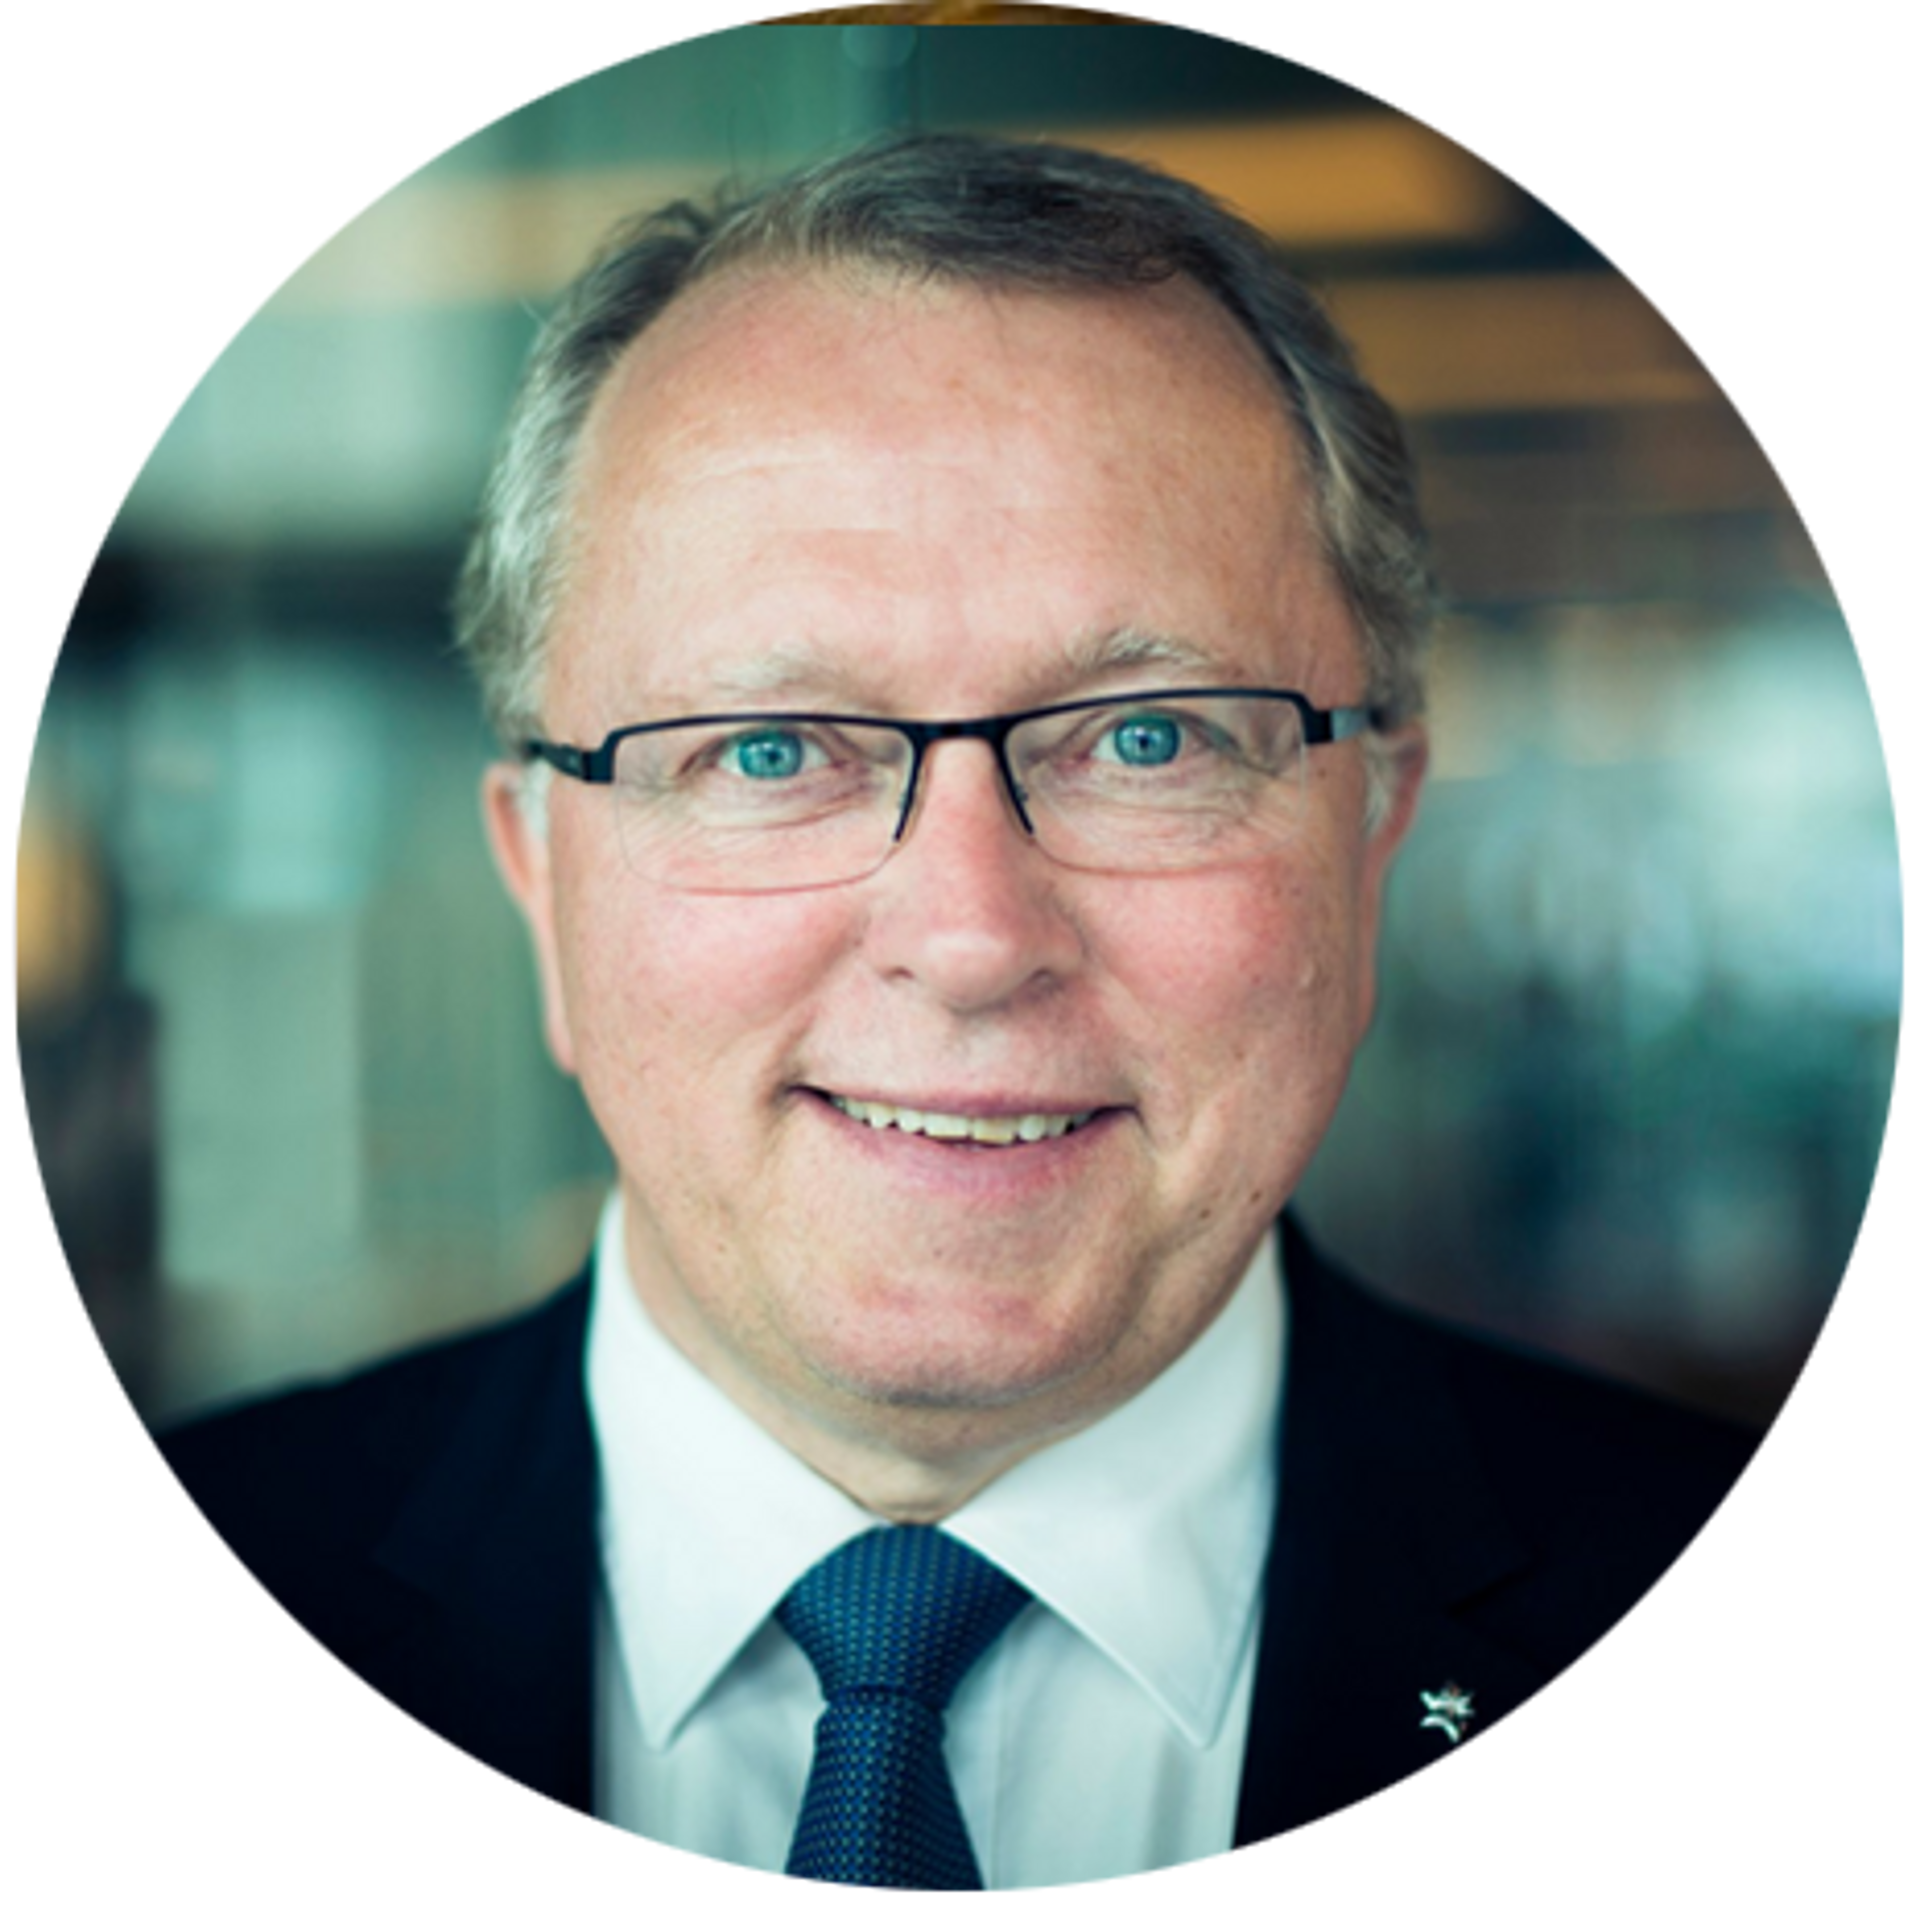 Eldar Sætre, CEO von Equinor